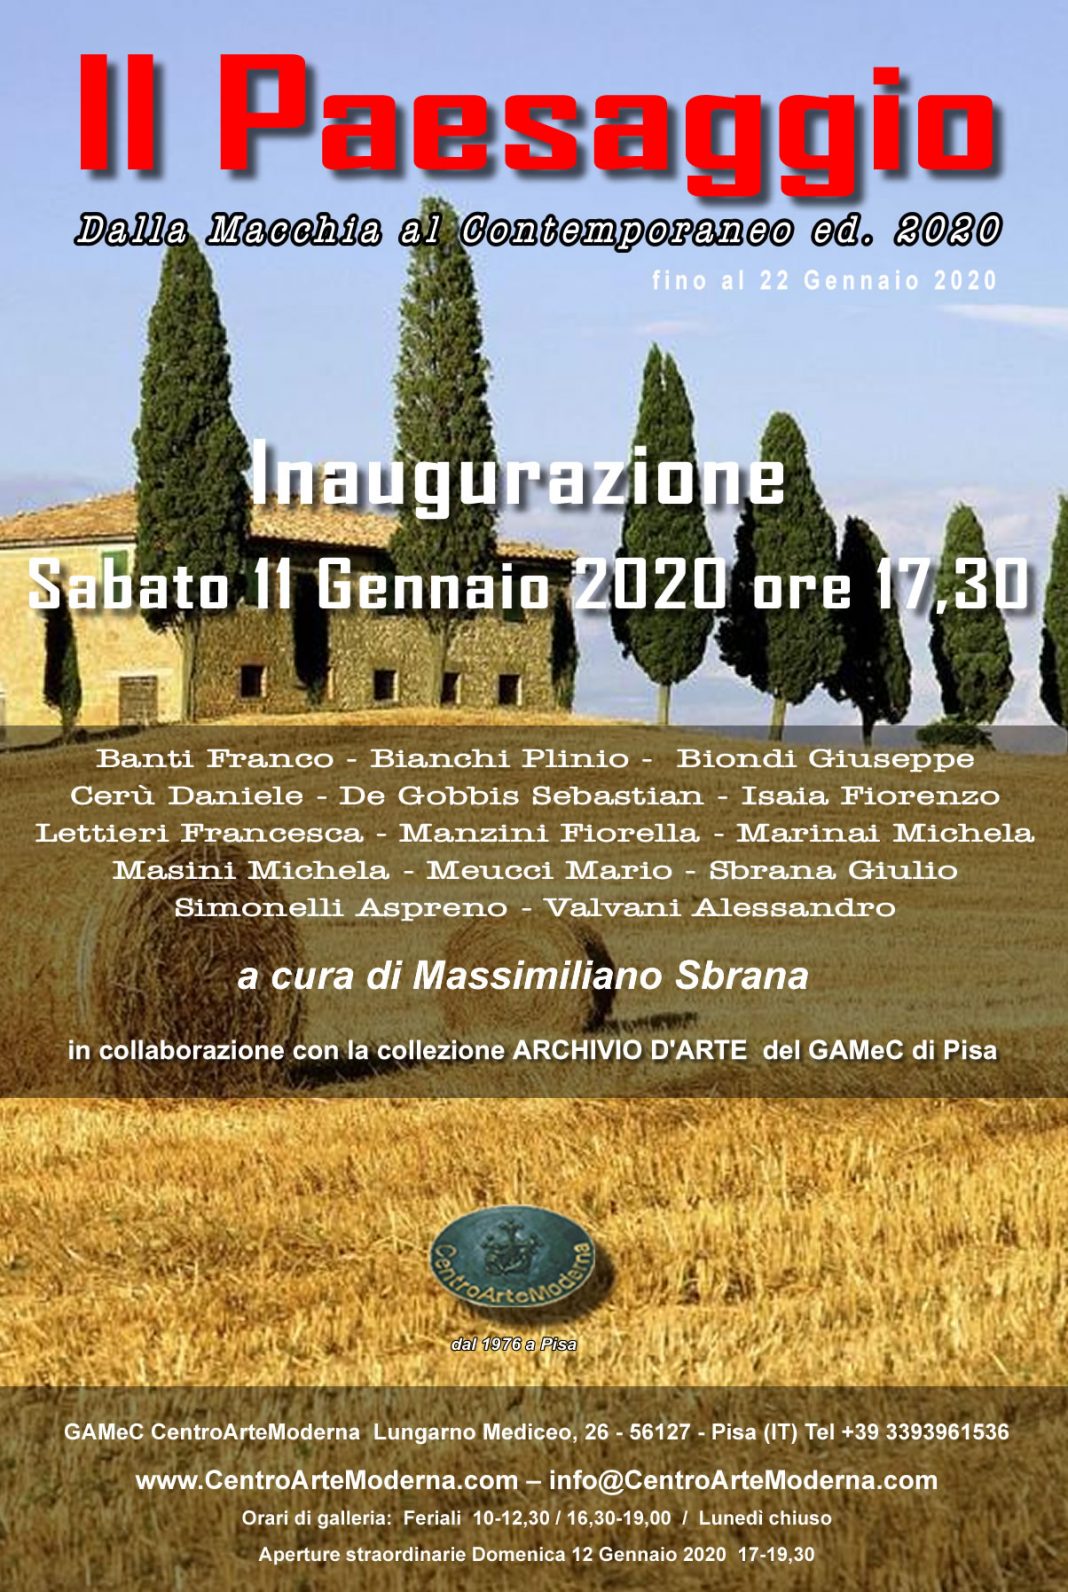 Il Paesaggio: Dalla Macchia al Contemporaneo. Edizione 2020https://www.exibart.com/repository/media/formidable/11/invito-paesaggio-2020-1068x1592.jpg